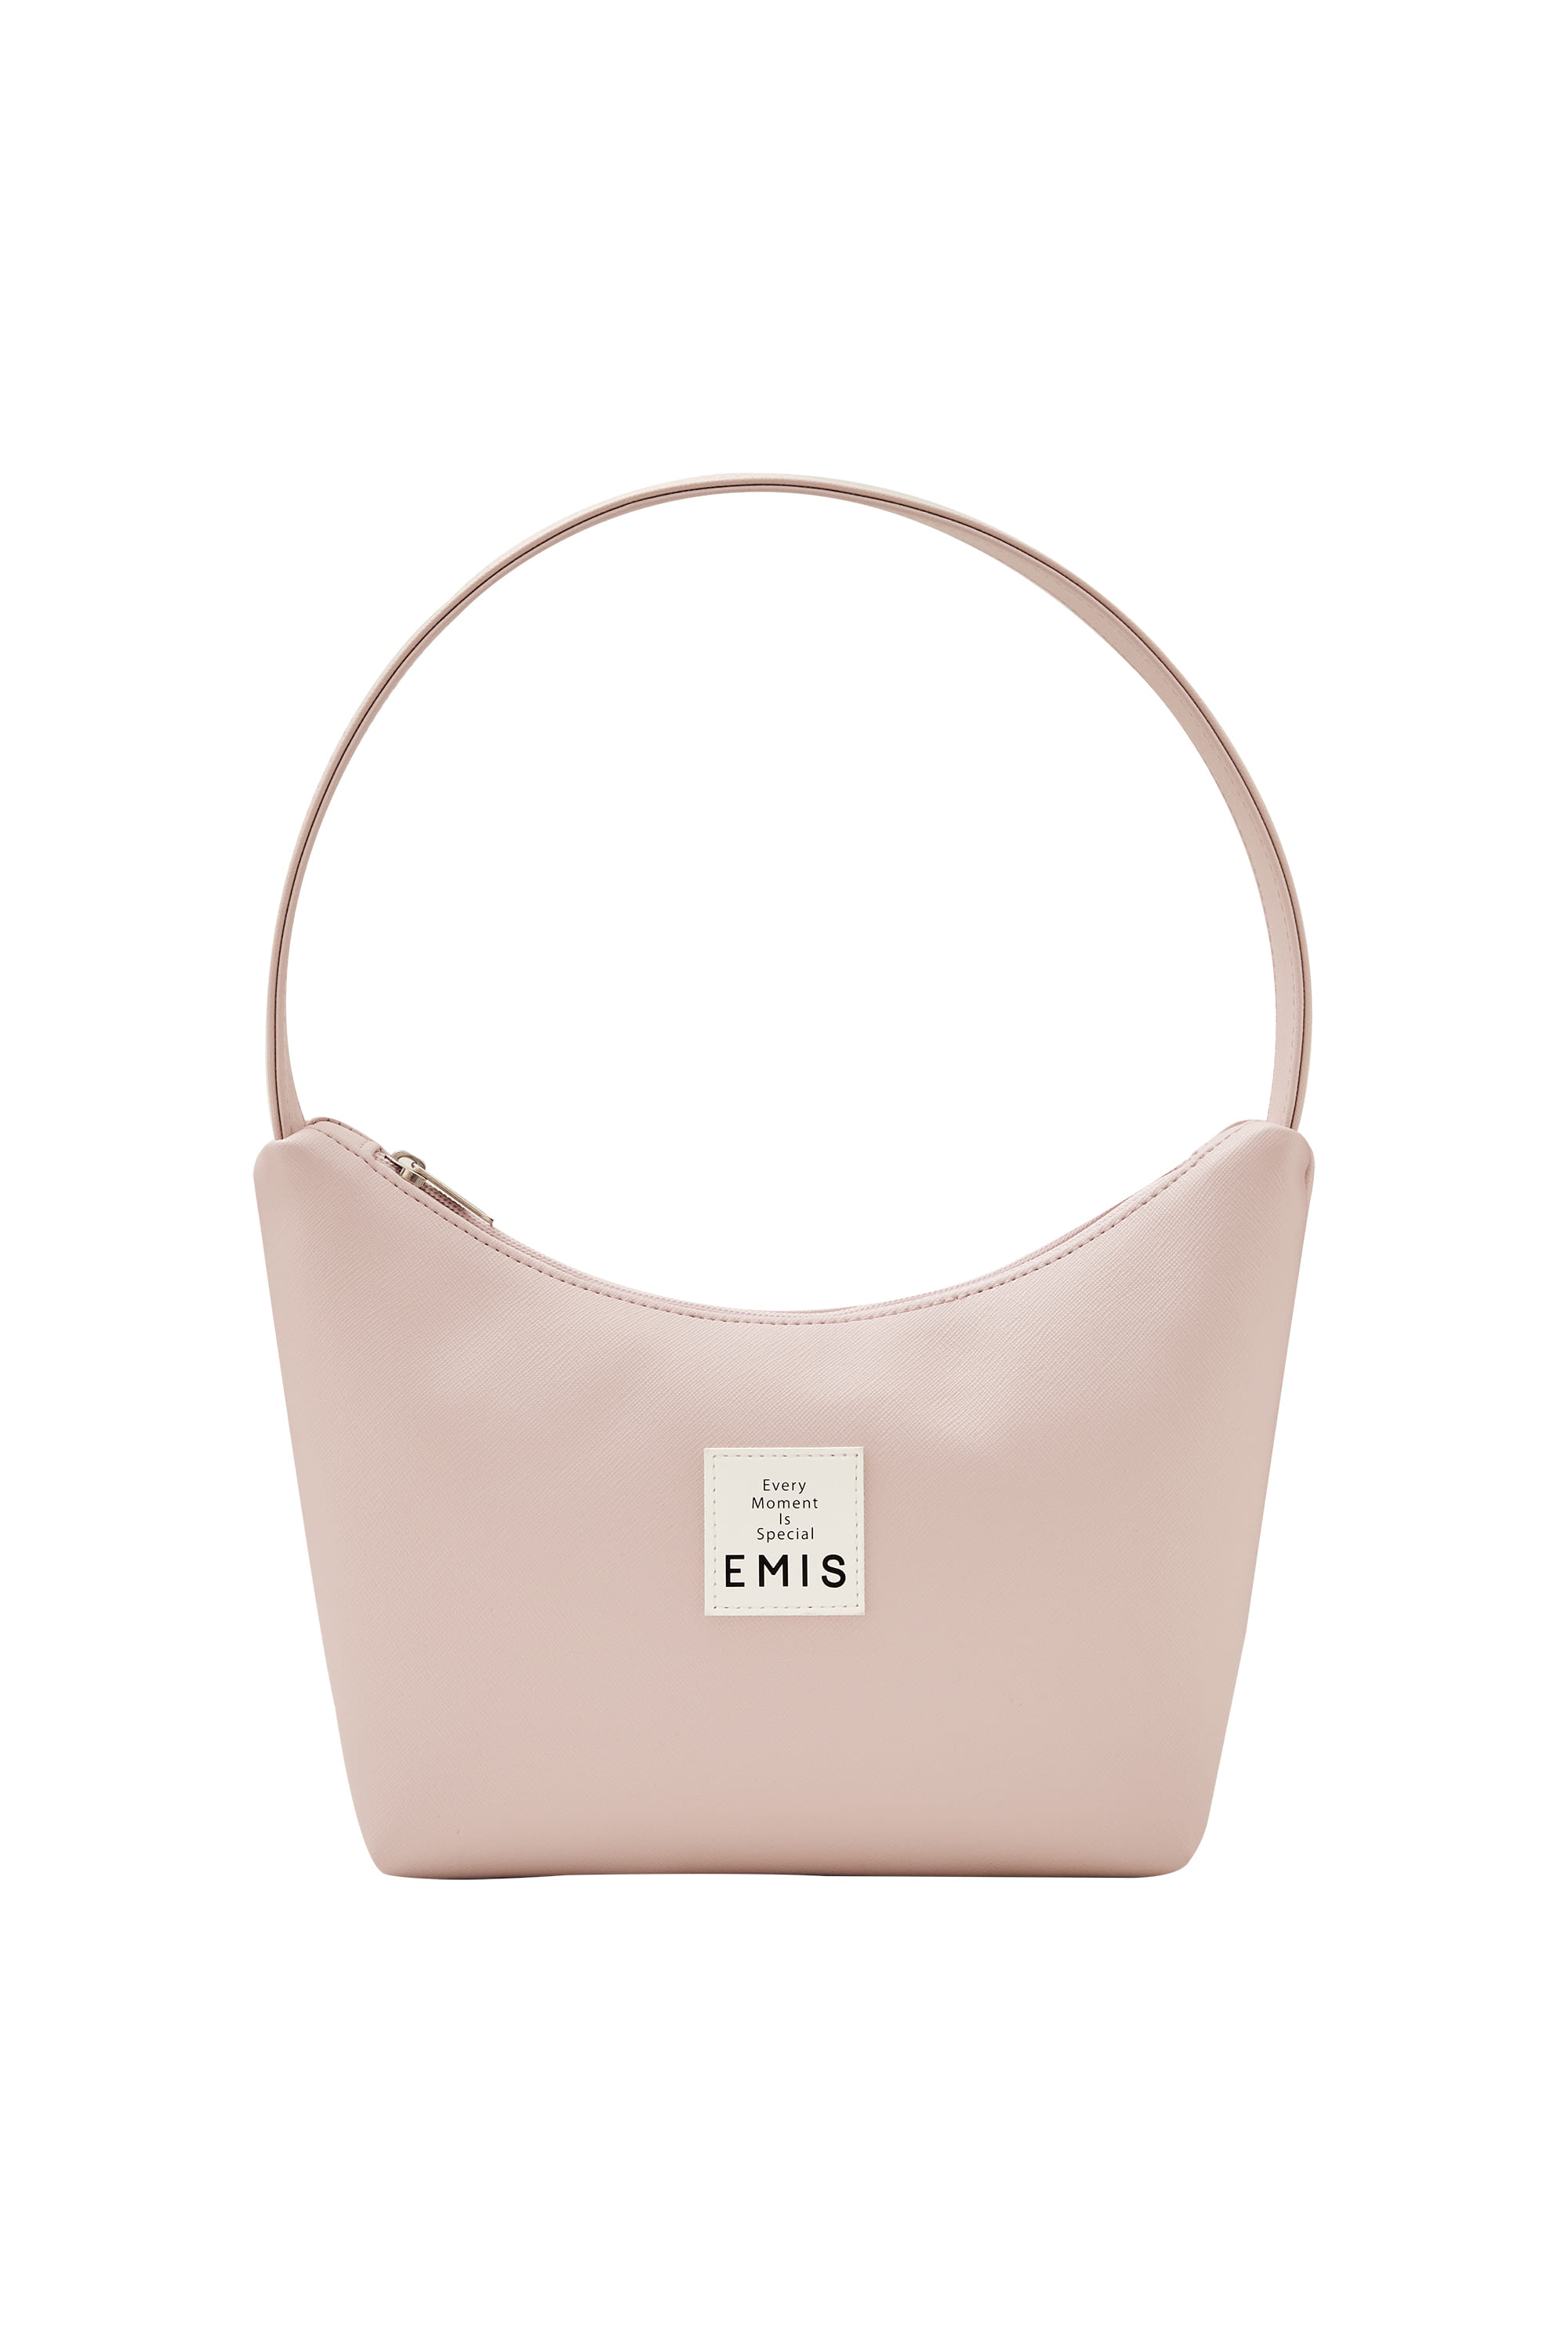 韓國EMIS - NEW LEATHER HOBO BAG-LIGHT PINK 新款皮革 HOBO 包-淺粉紅色